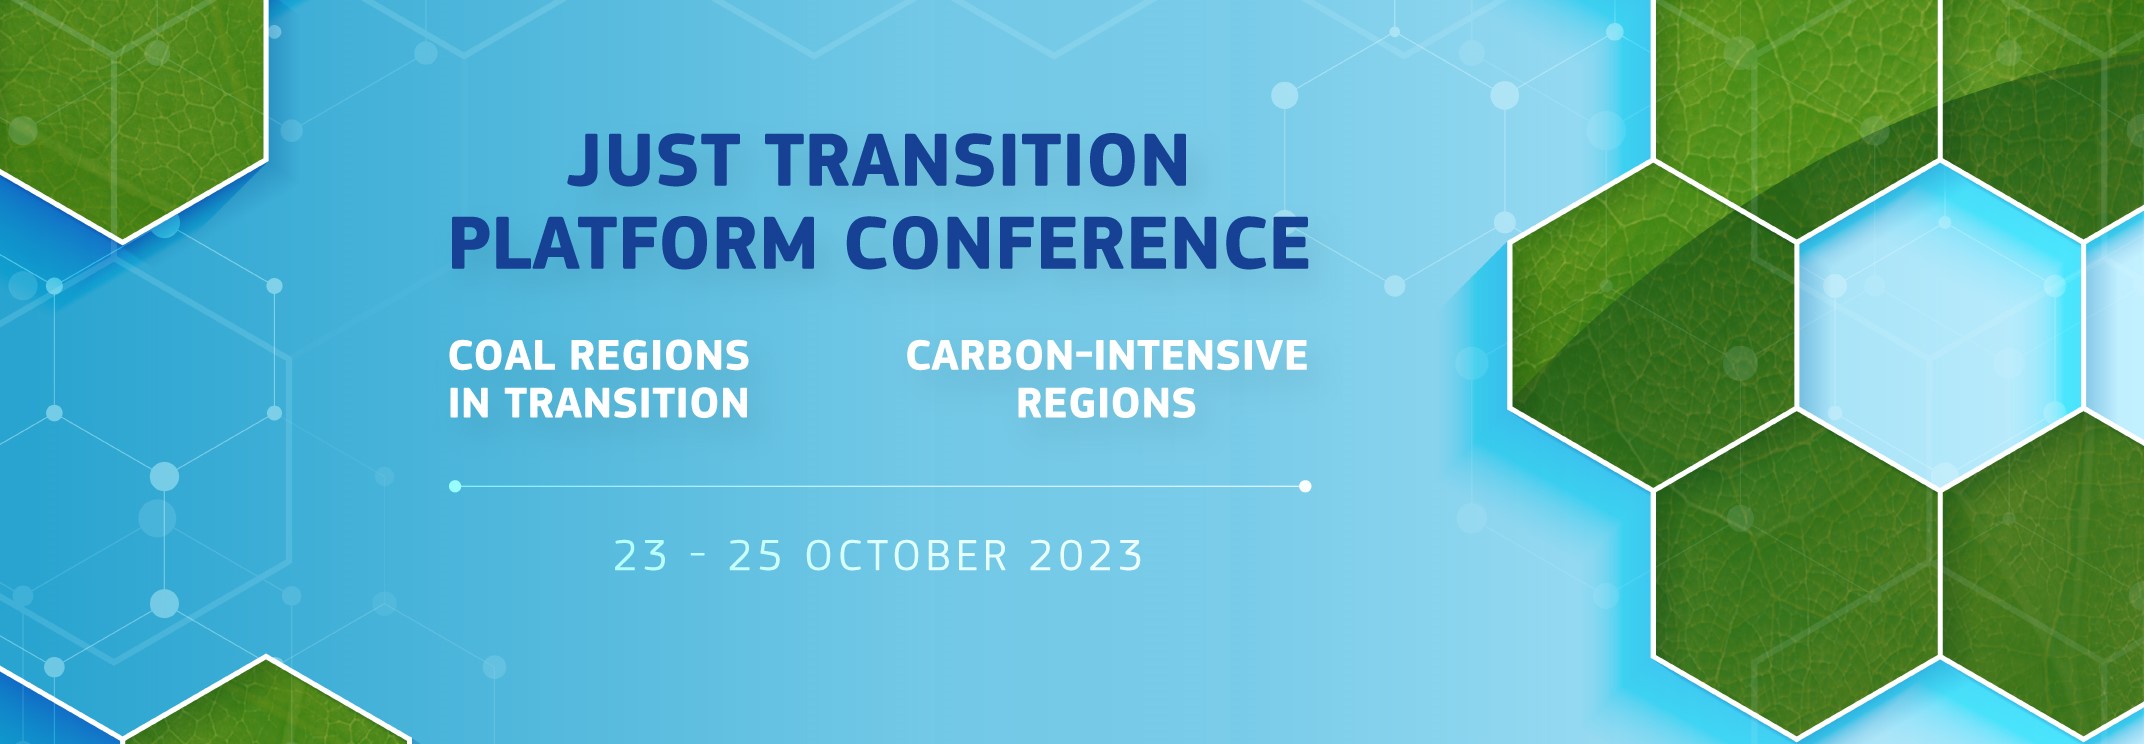 Just Transition Platform Conference – 23-25 October 2023